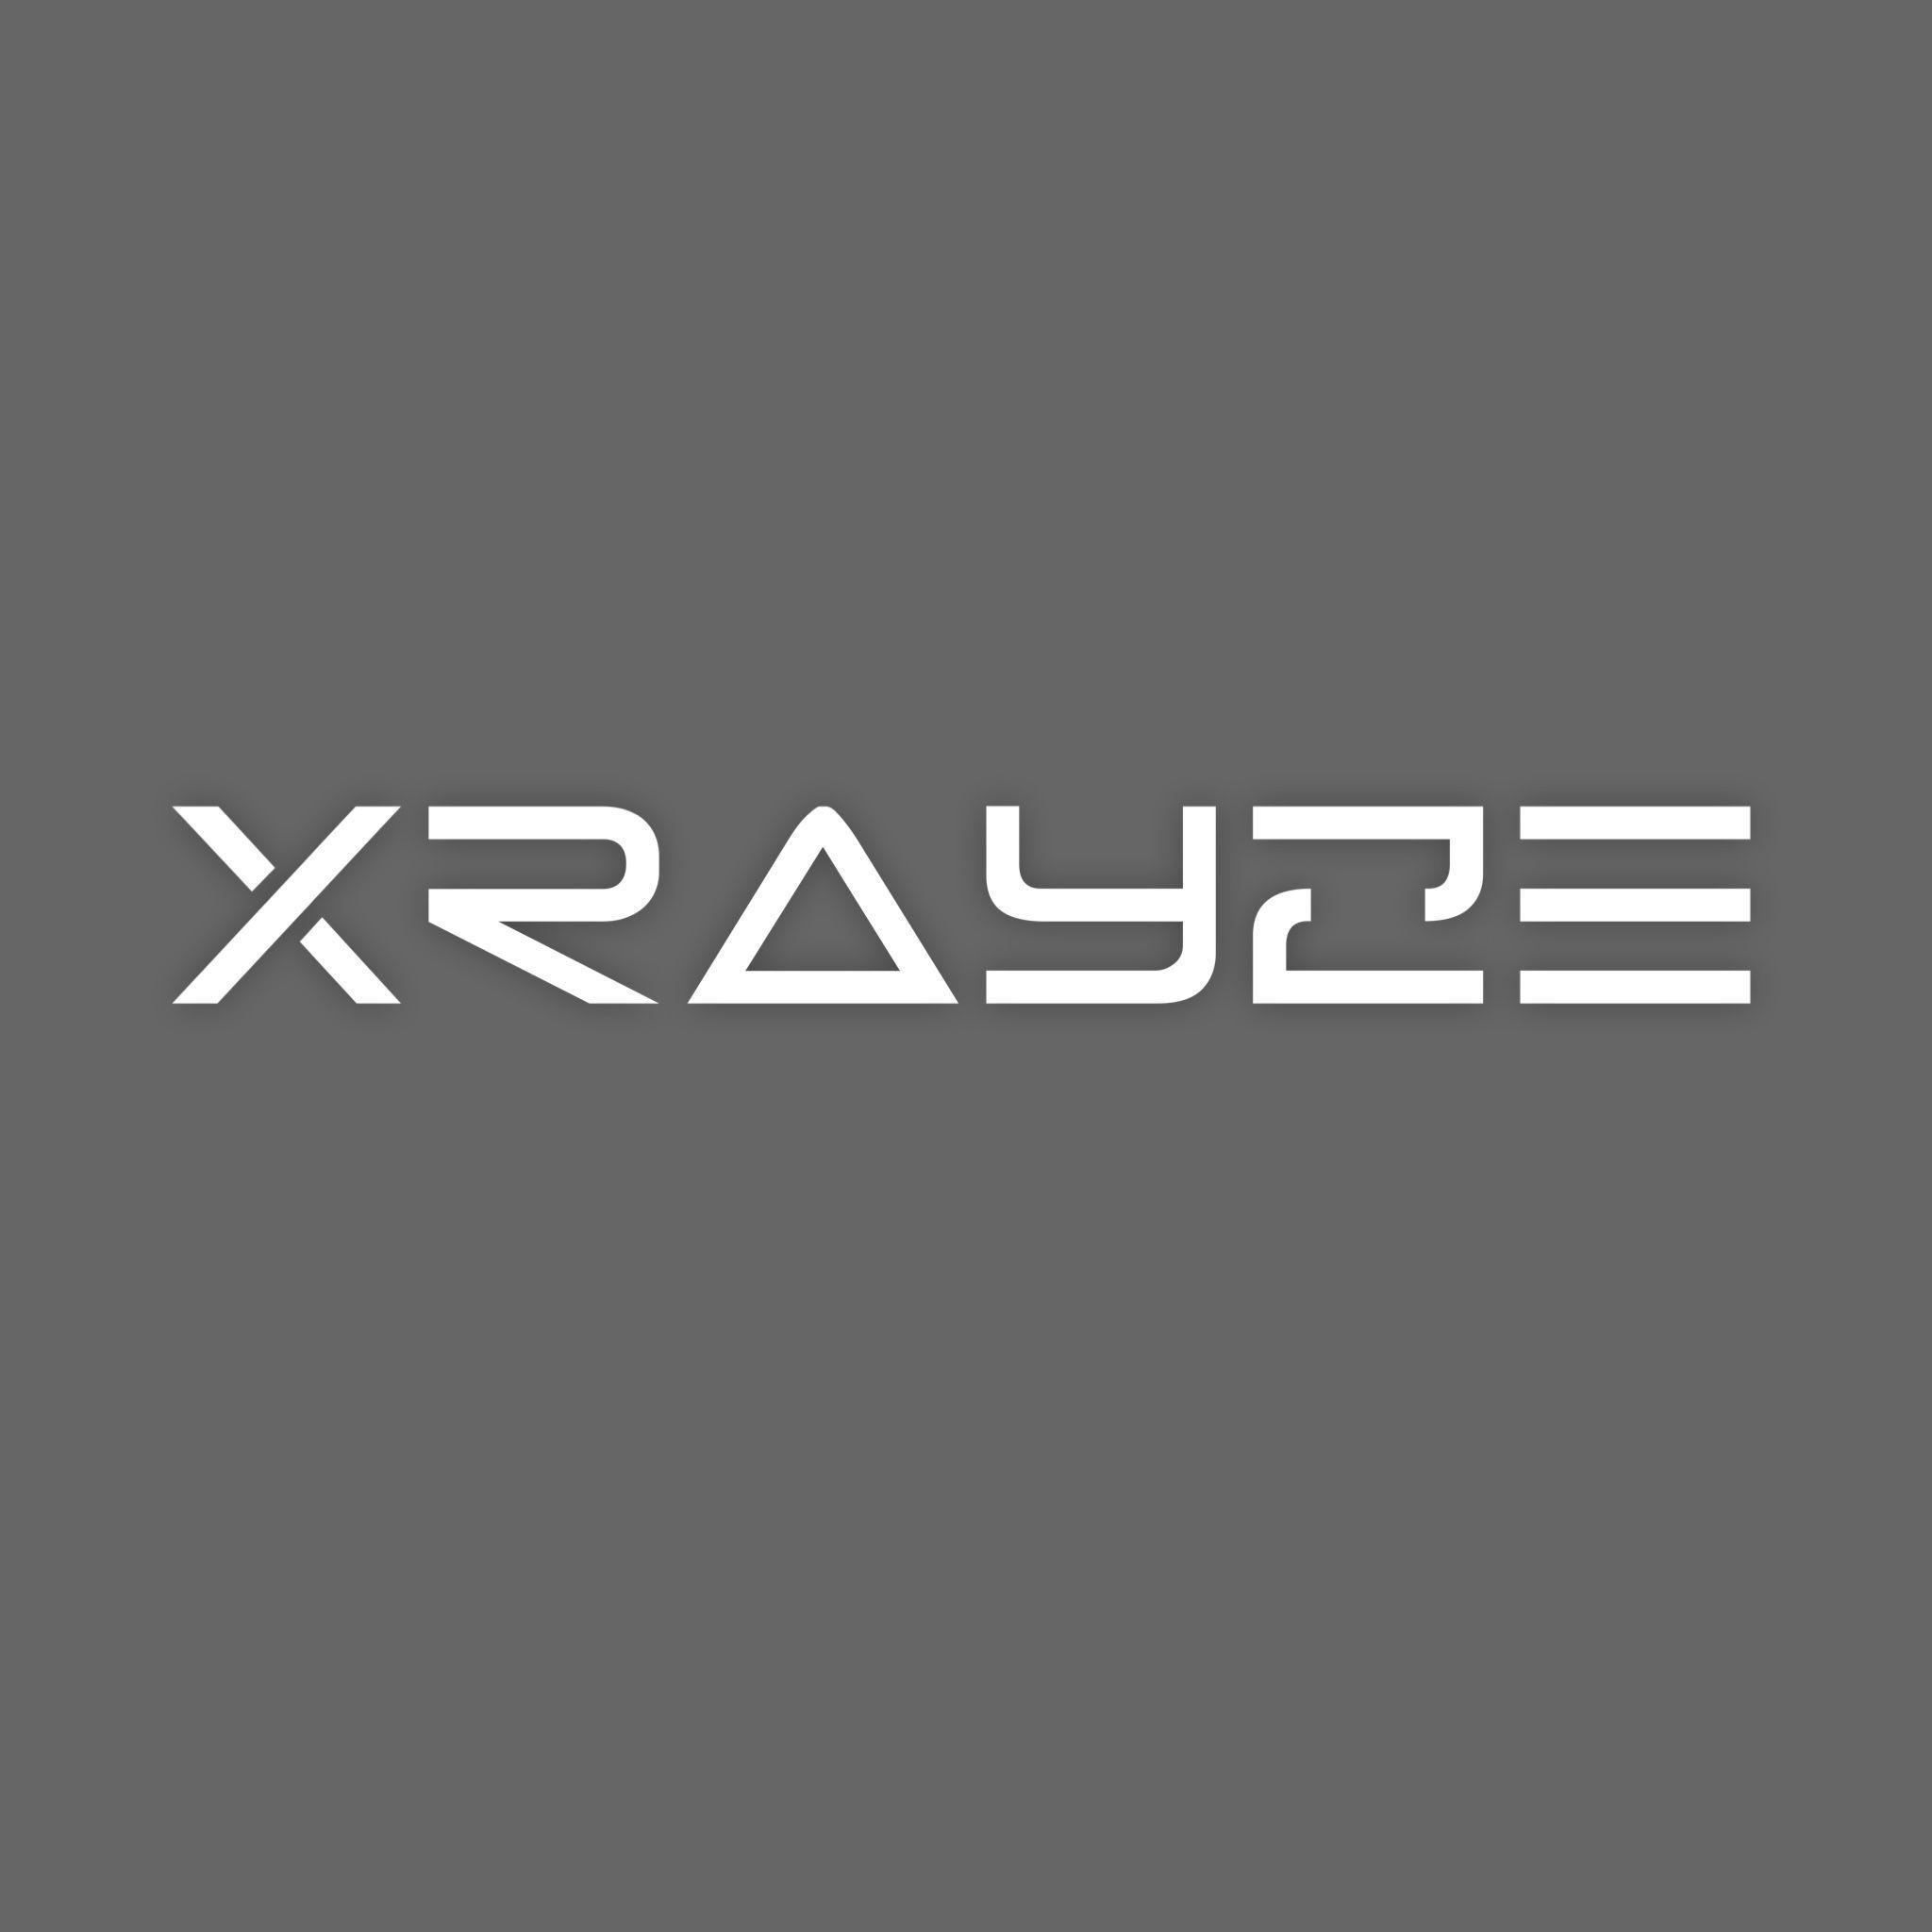 Player XRAYYZE avatar